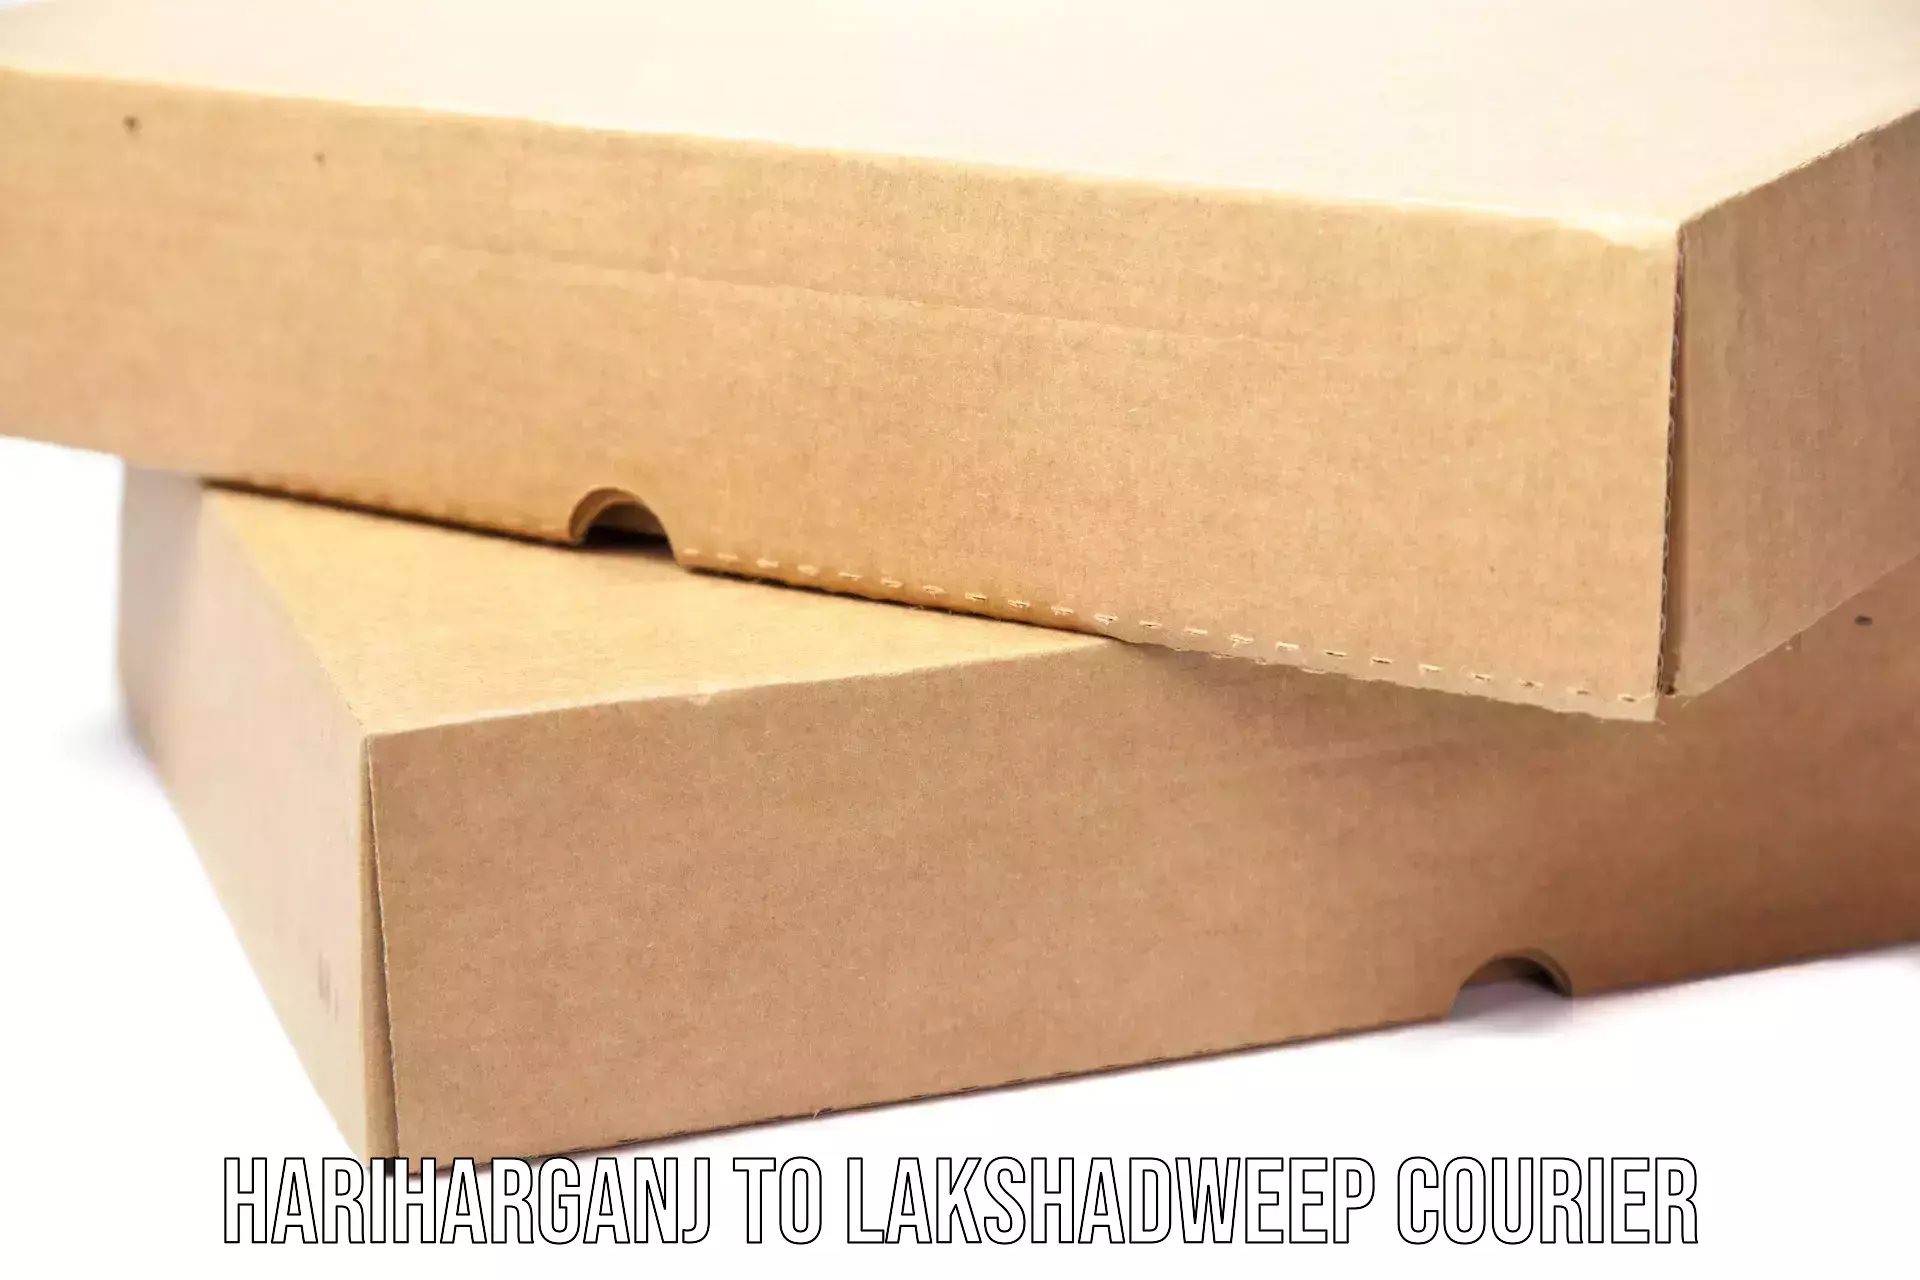 Custom courier packaging in Hariharganj to Lakshadweep